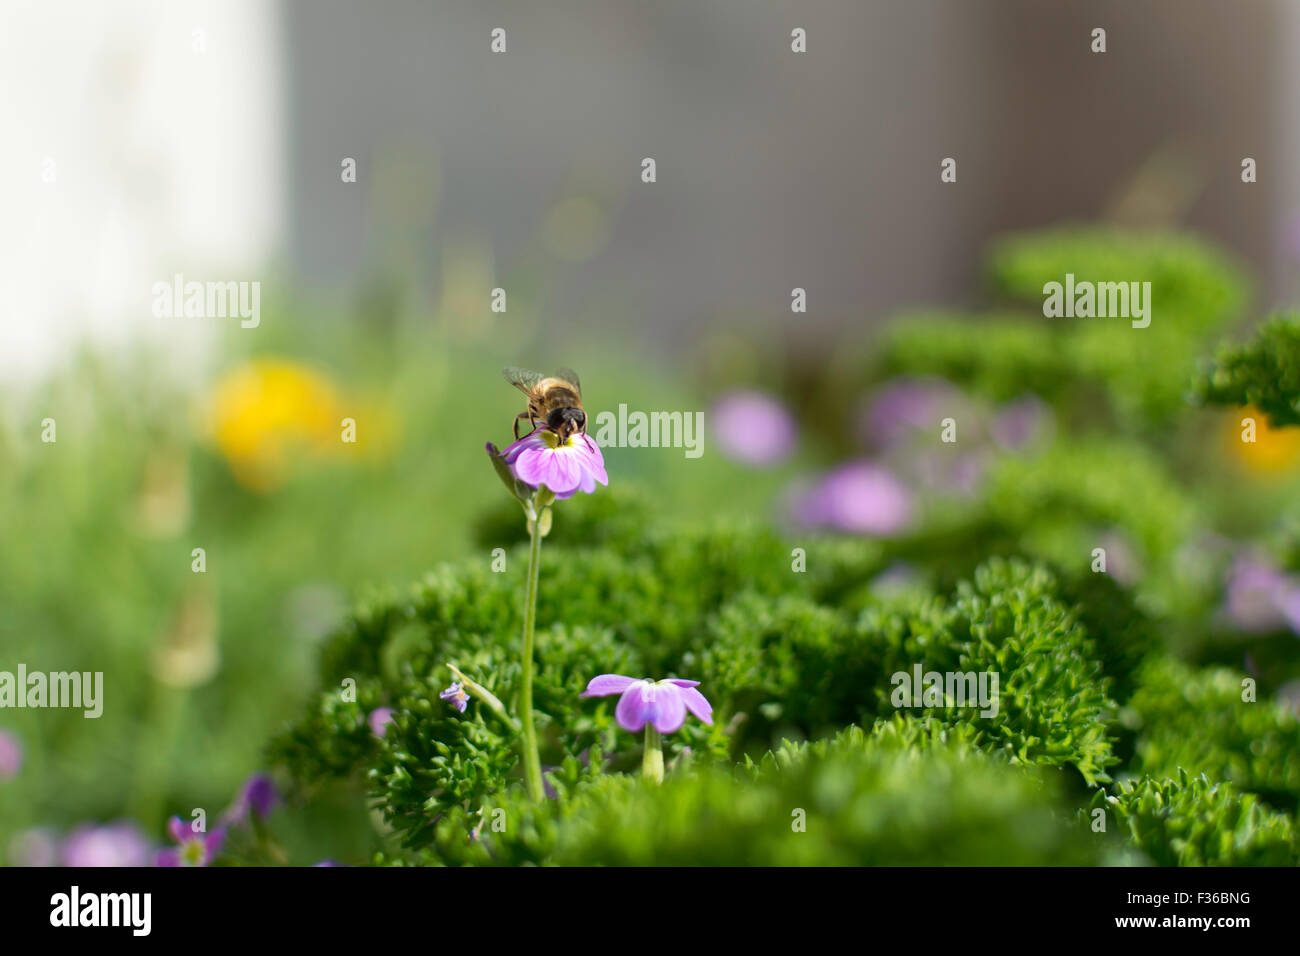 Ich sitze In einen englischen Garten. Eine Biene auf einer Blume in meinem Garten. Eine einzelne Blume, umgeben von Grün und Schärfentiefe. Stockfoto